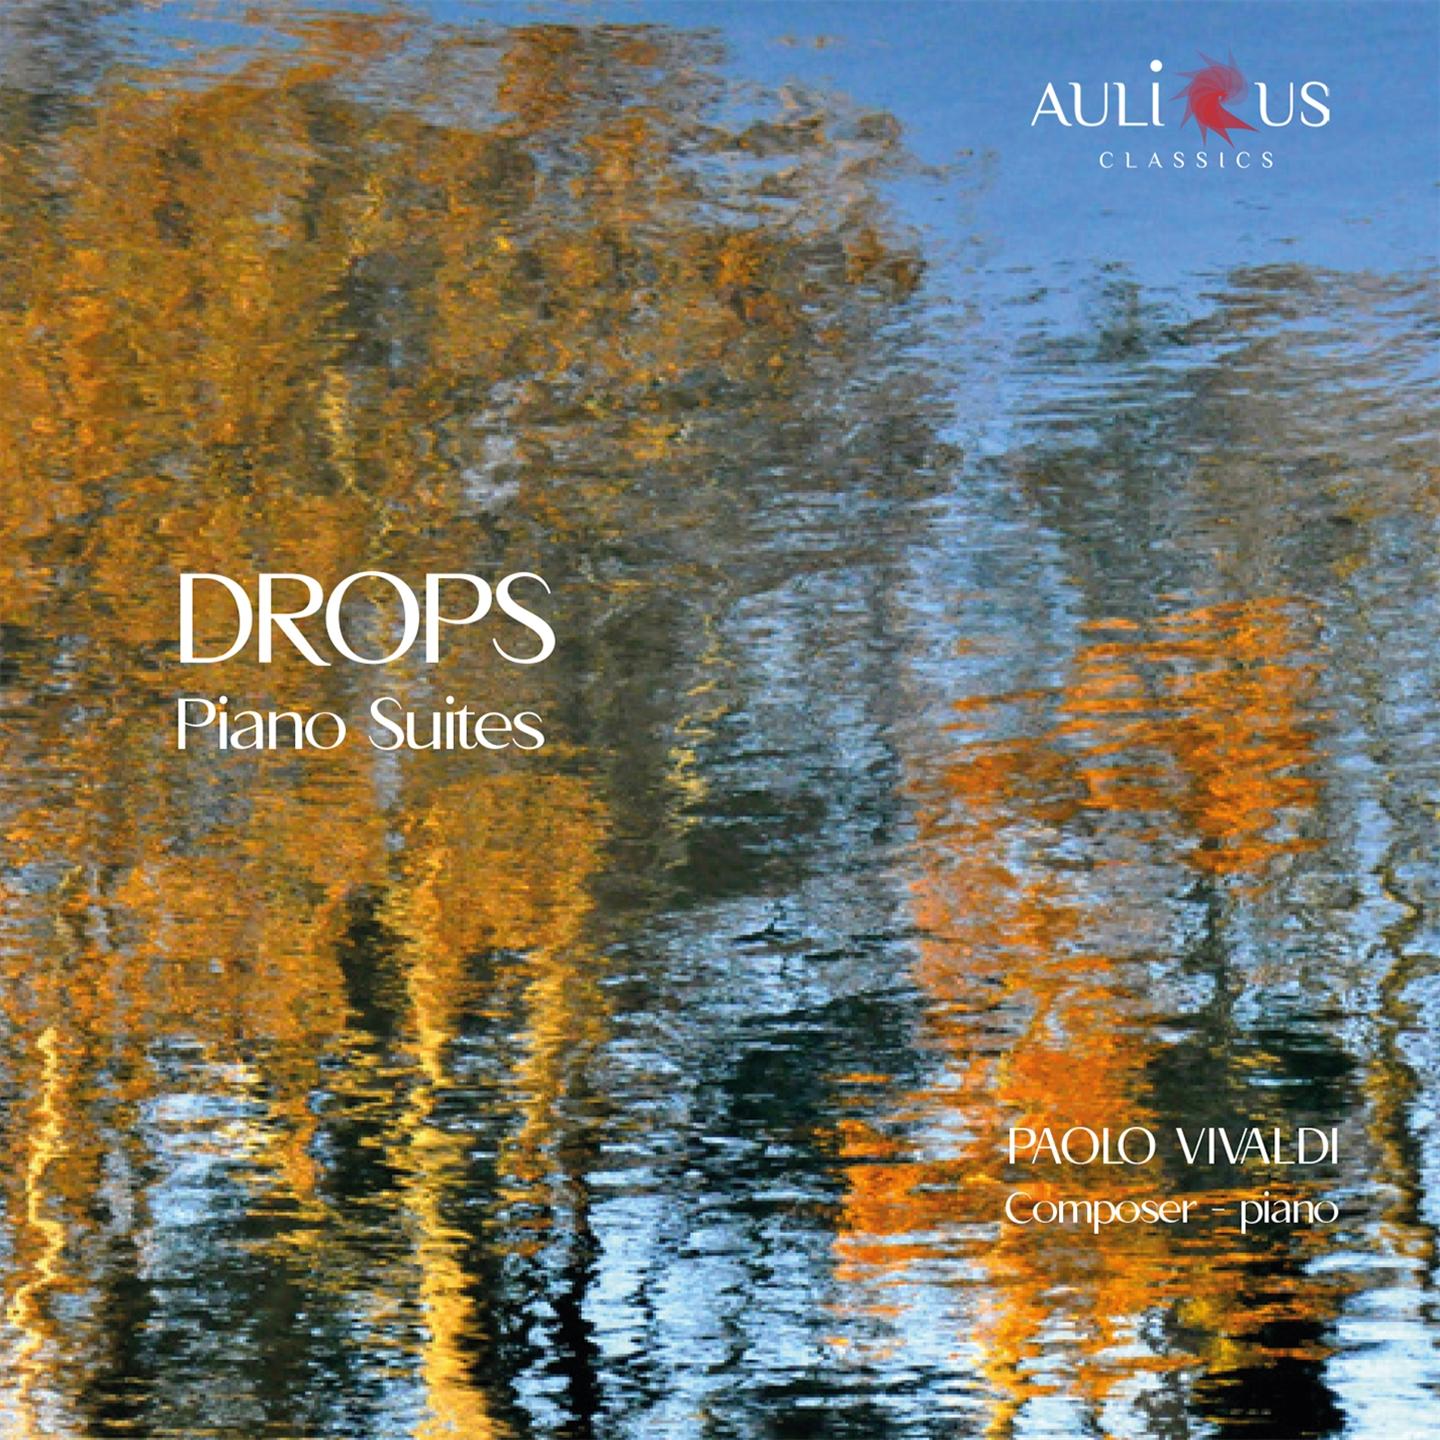 PAOLO VIVALDI: DROPS - PIANO SUITES